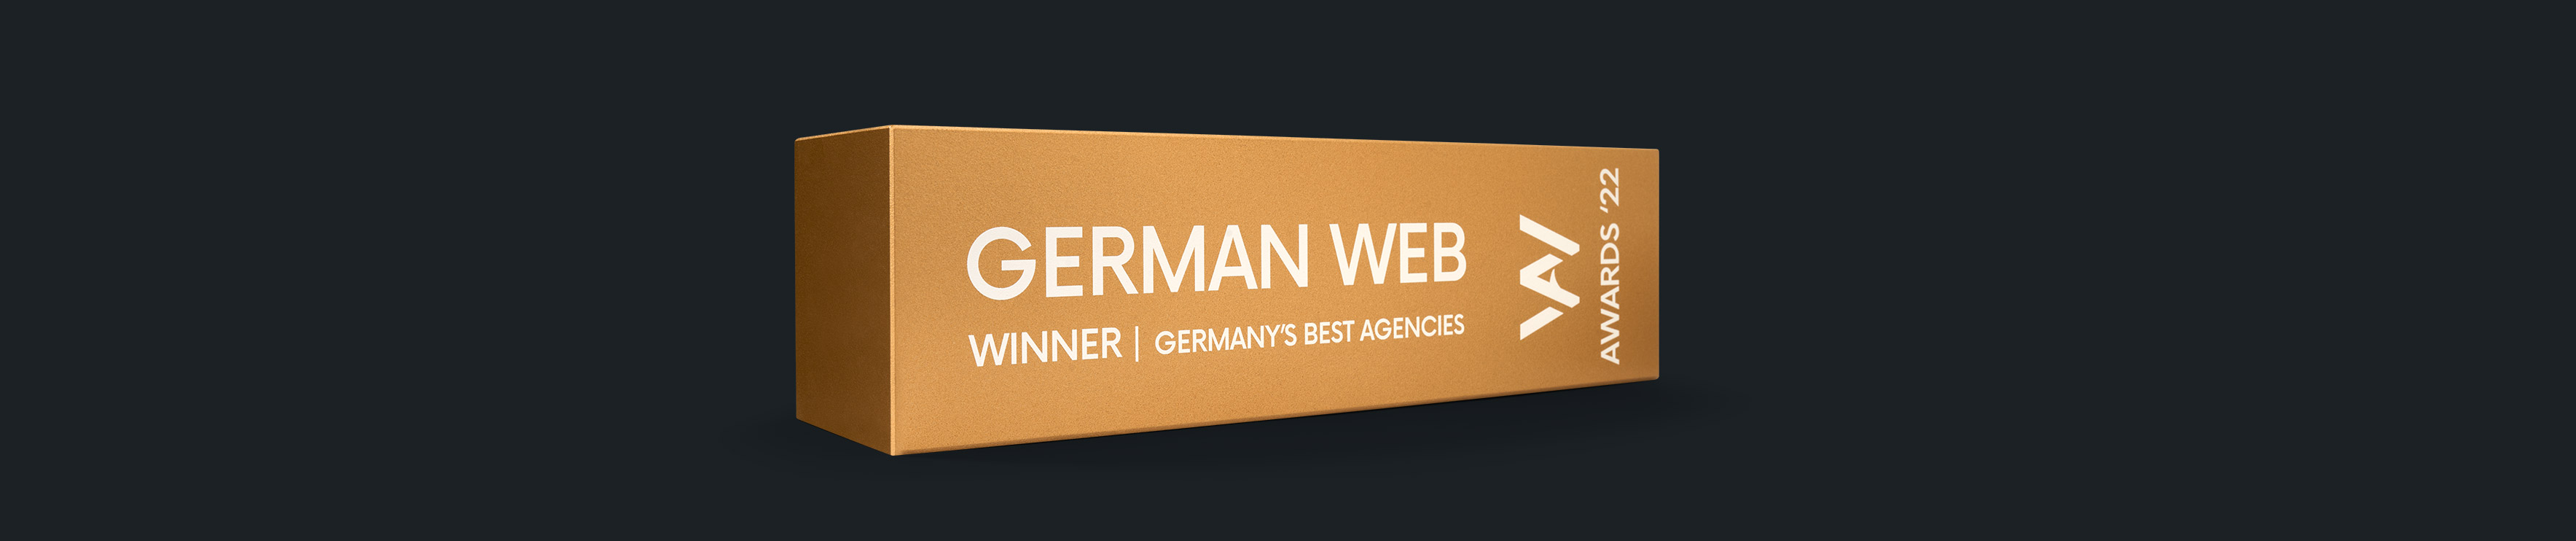 Men at Work - German Web Awards